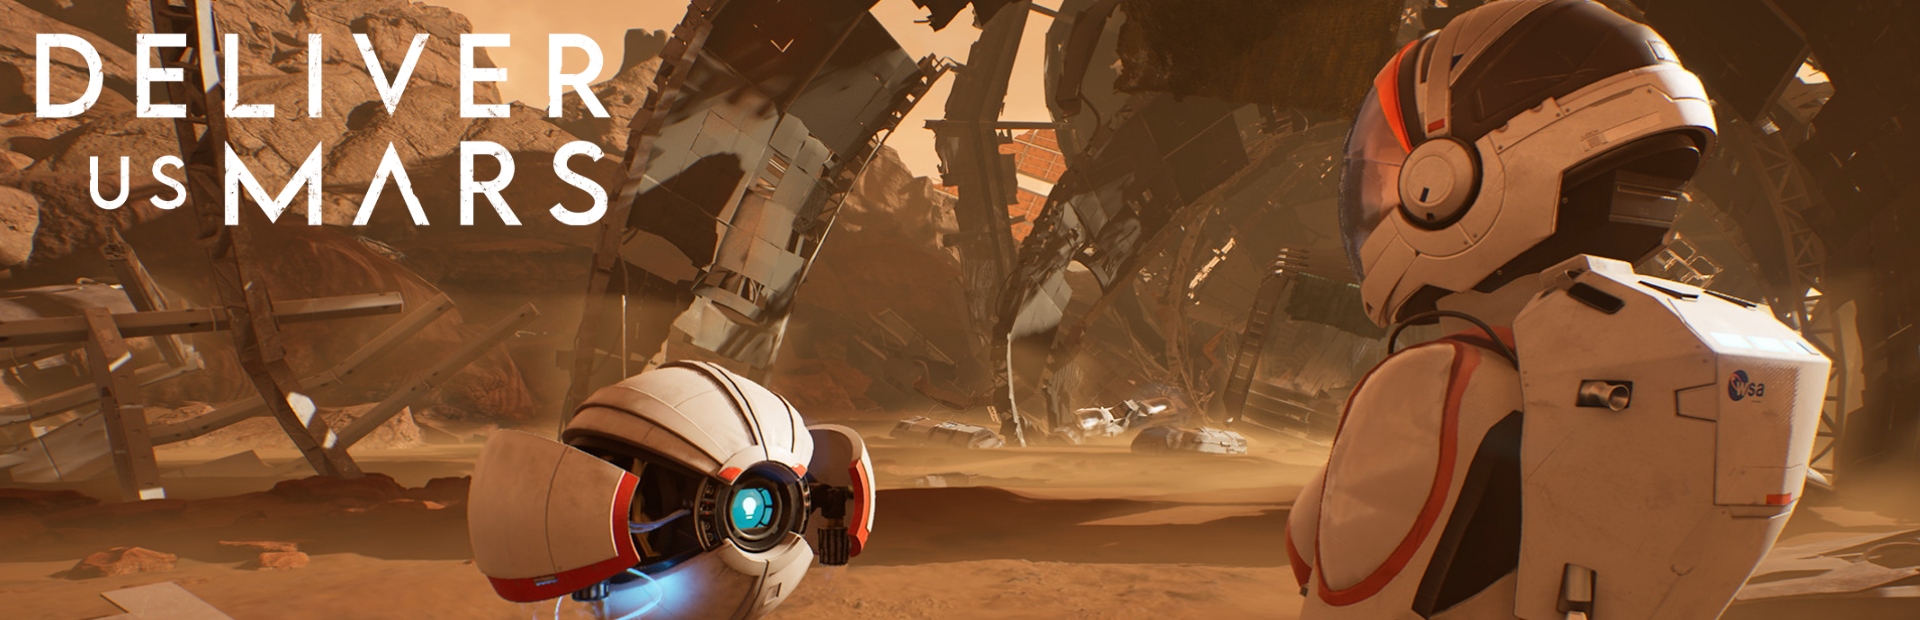 دانلود بازی Deliver Us Mars برای PC | گیمباتو